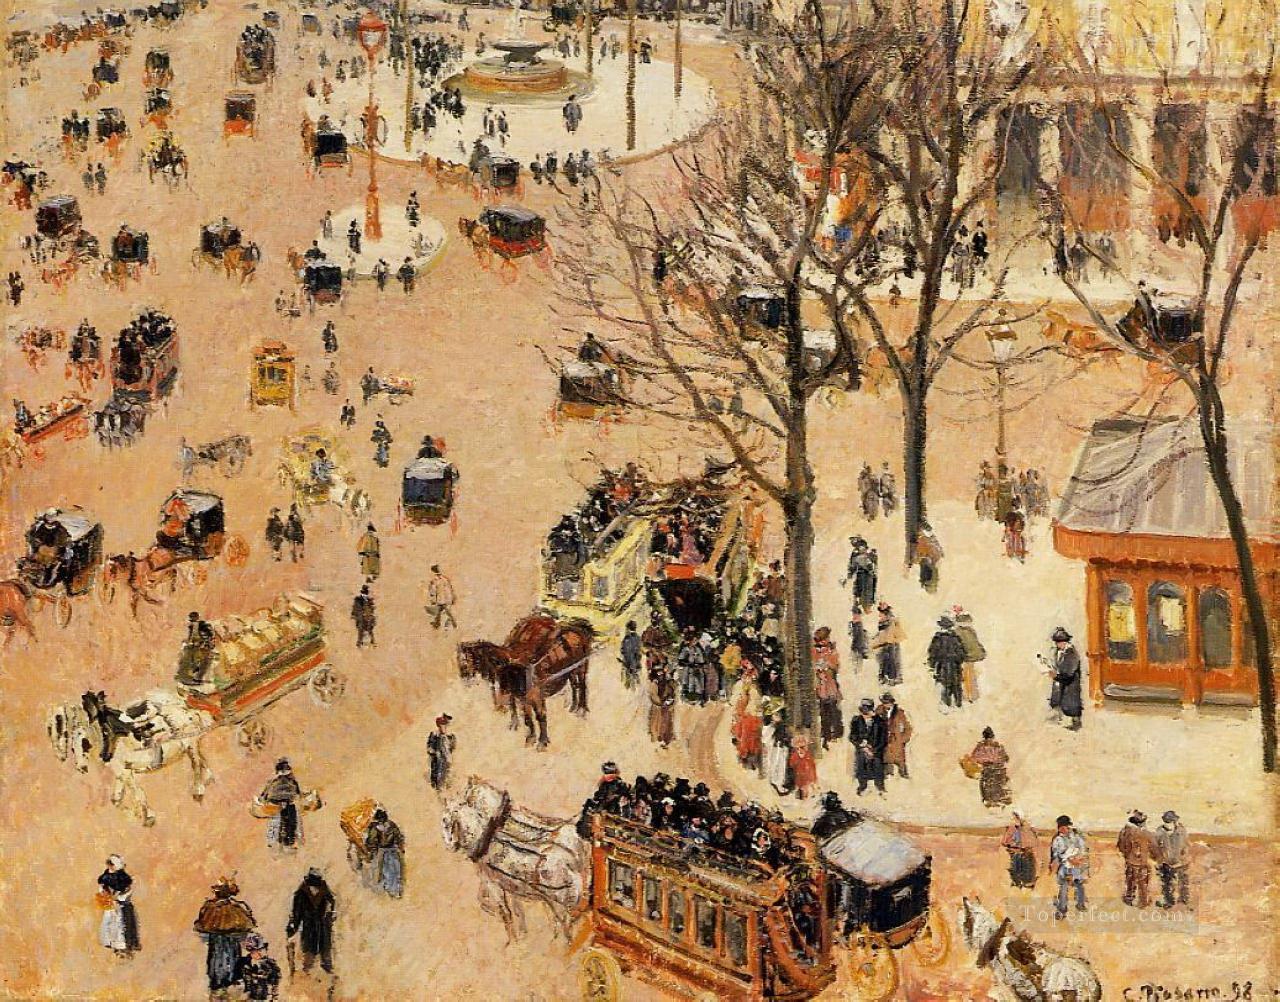 フランセ劇場広場 1898年 カミーユ・ピサロ油絵